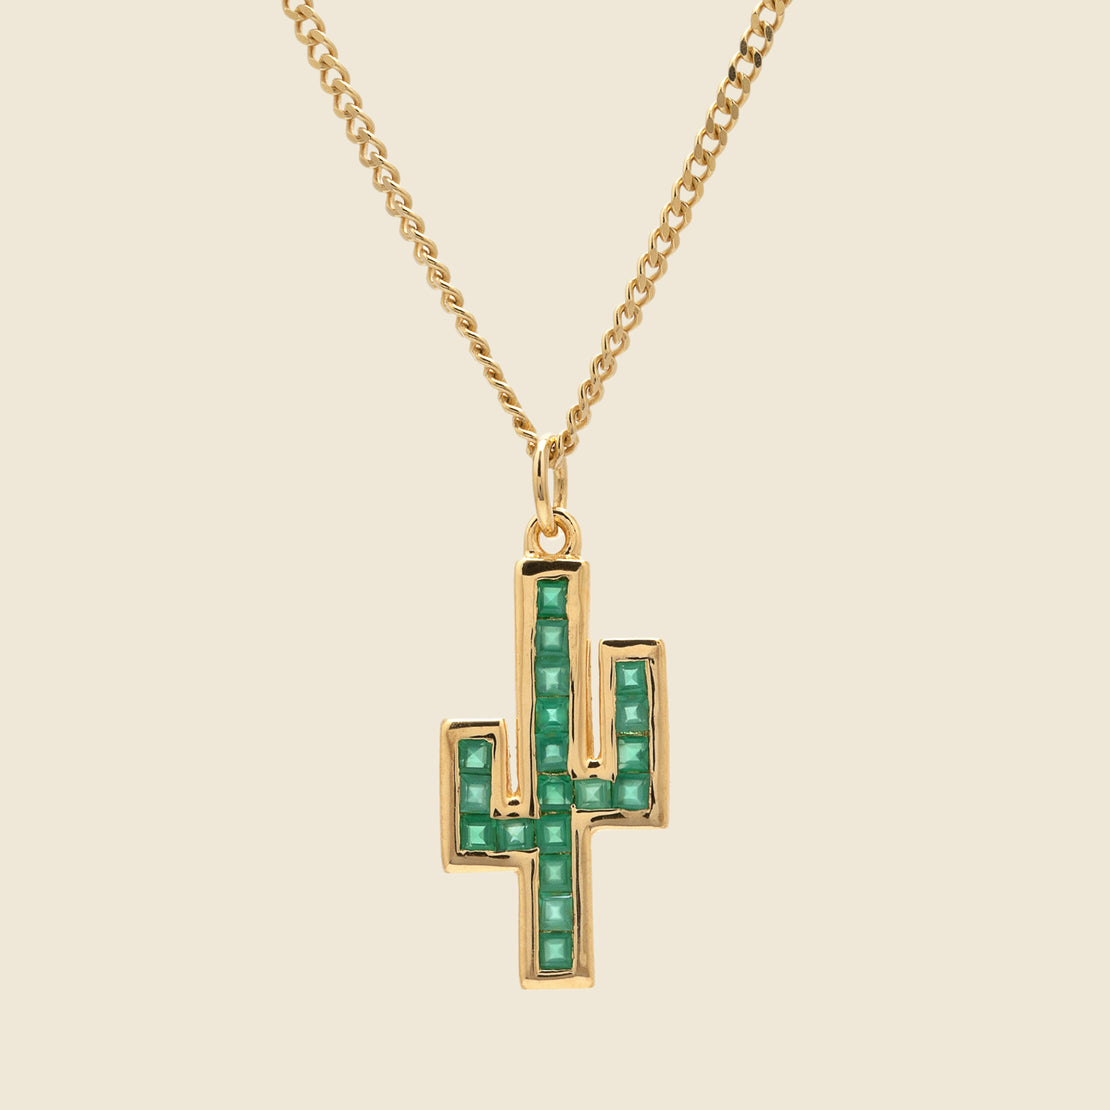 Miansai Onyx Pendant Necklace - Gold Vermeil/Cactus Green